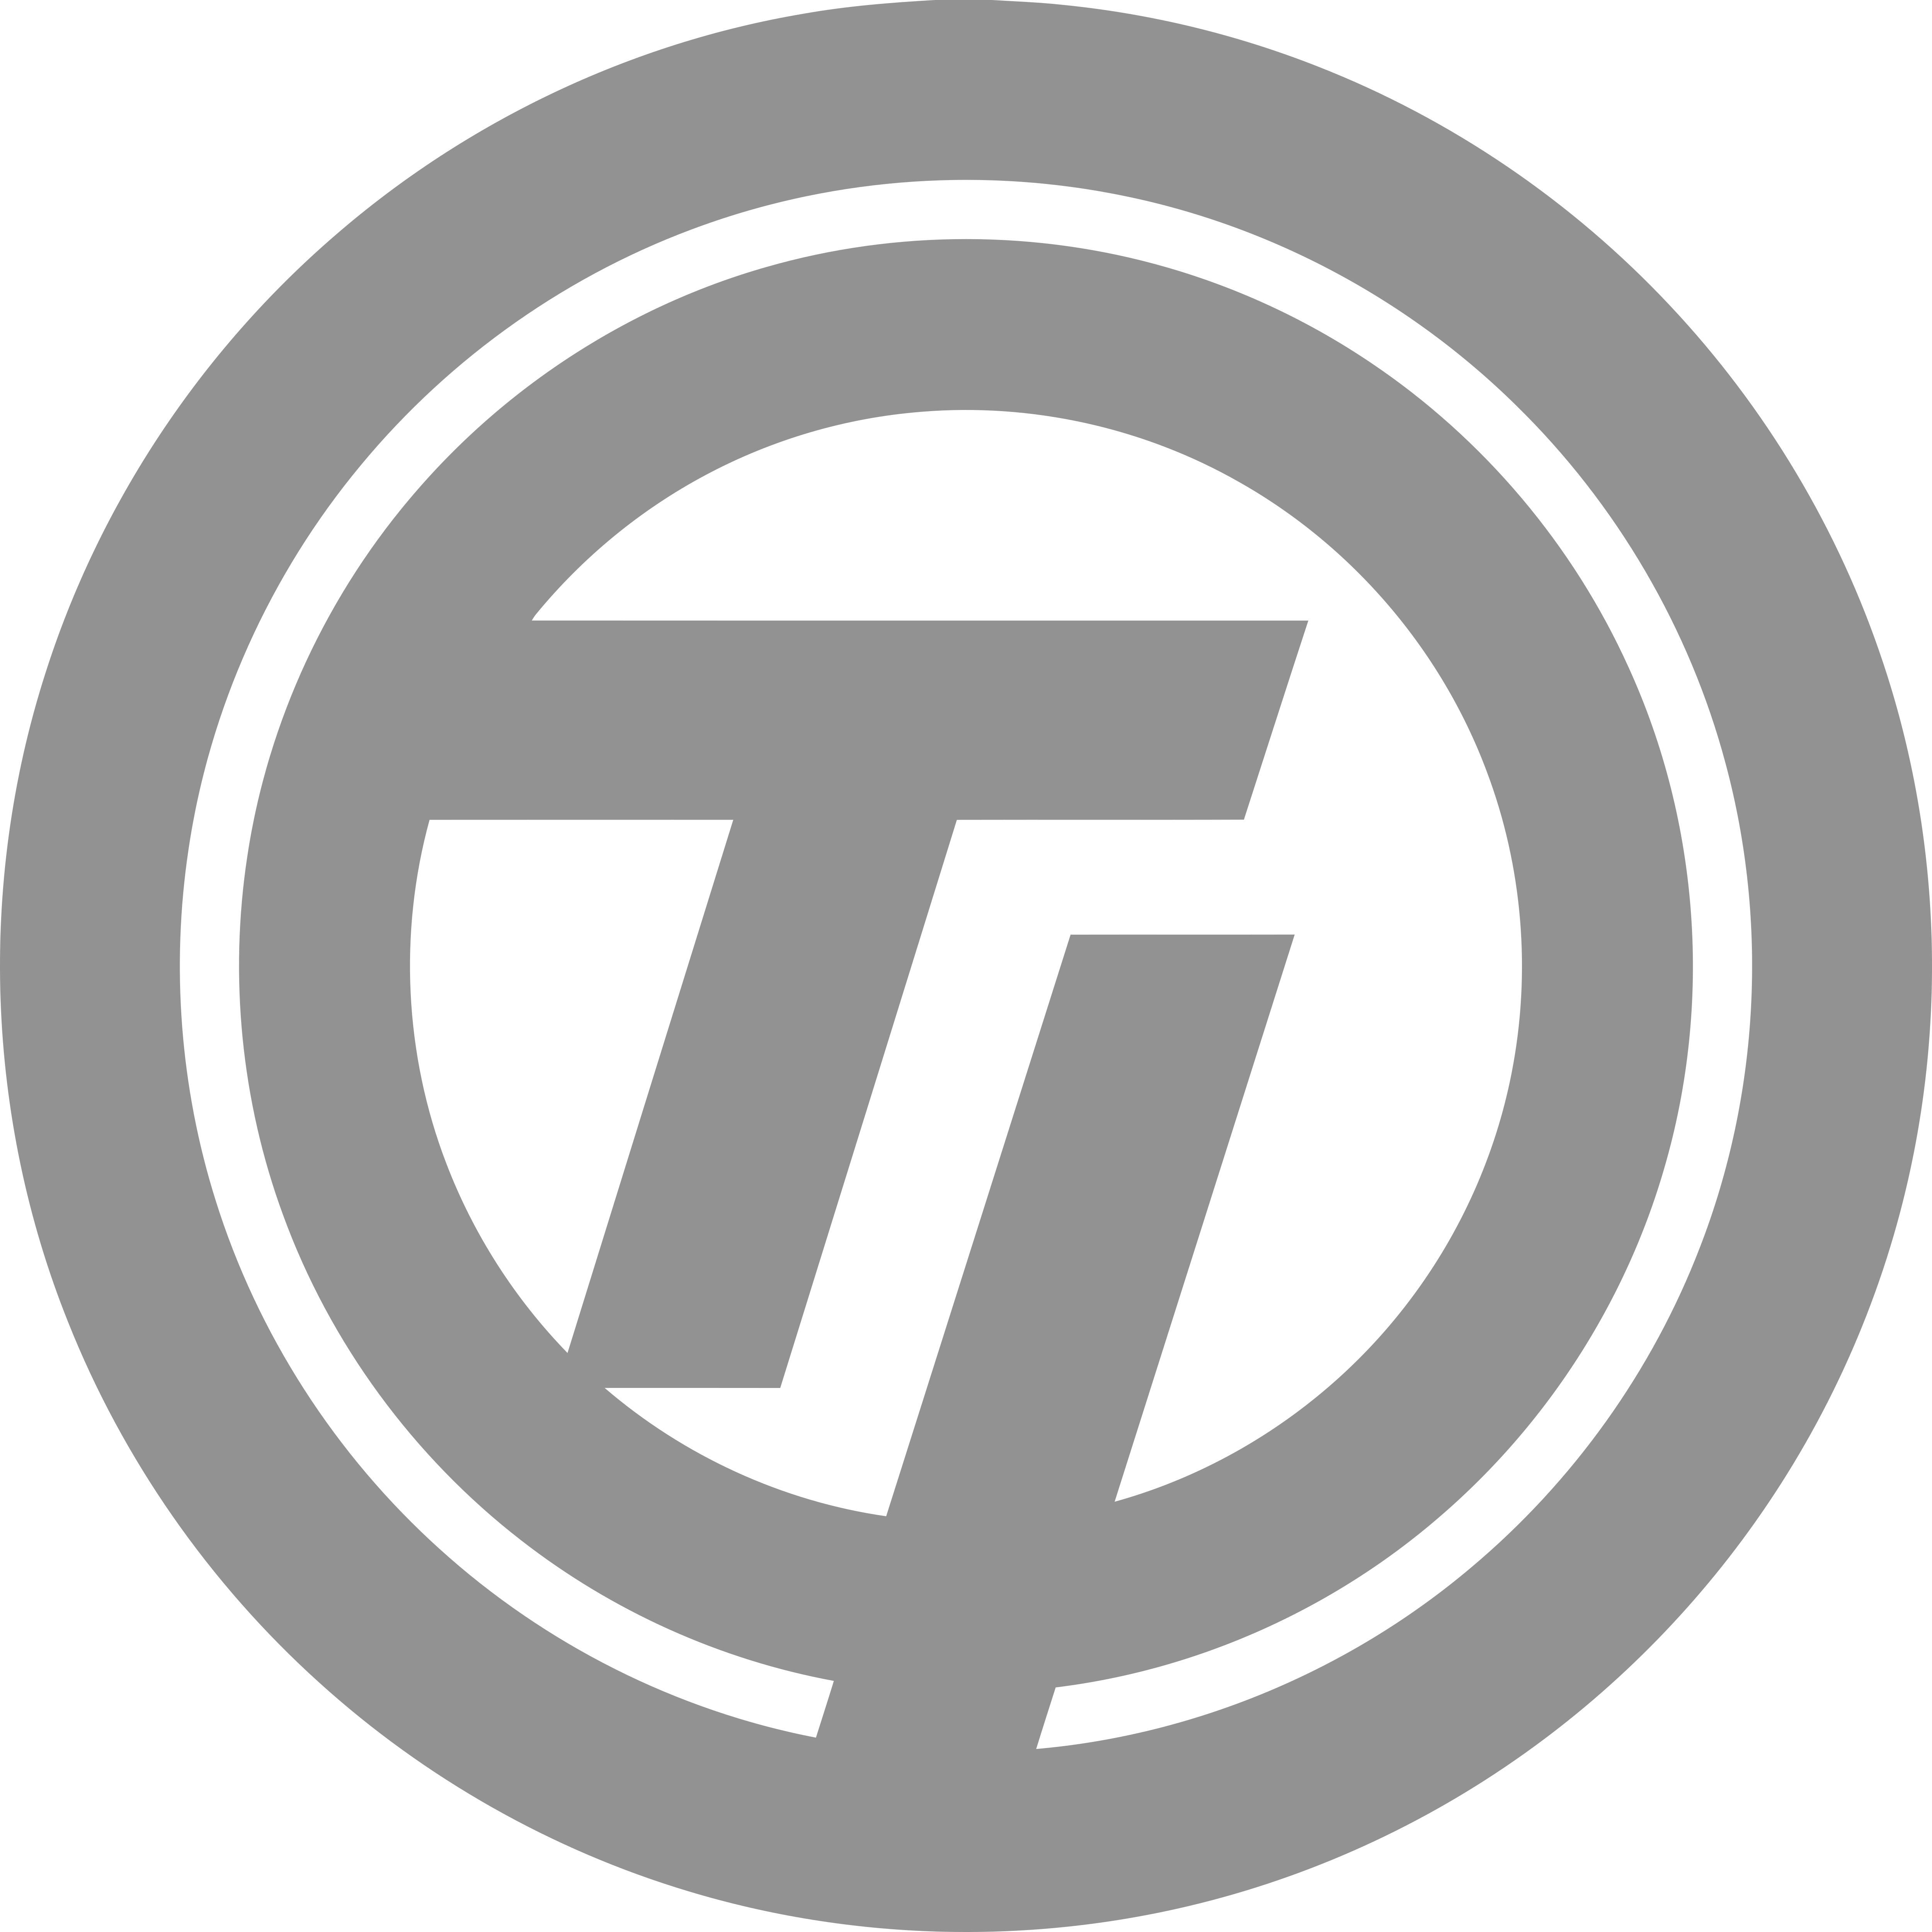 Г р а ти с т. TT Group лого. STG логотип. TL логотип. Лого t i.